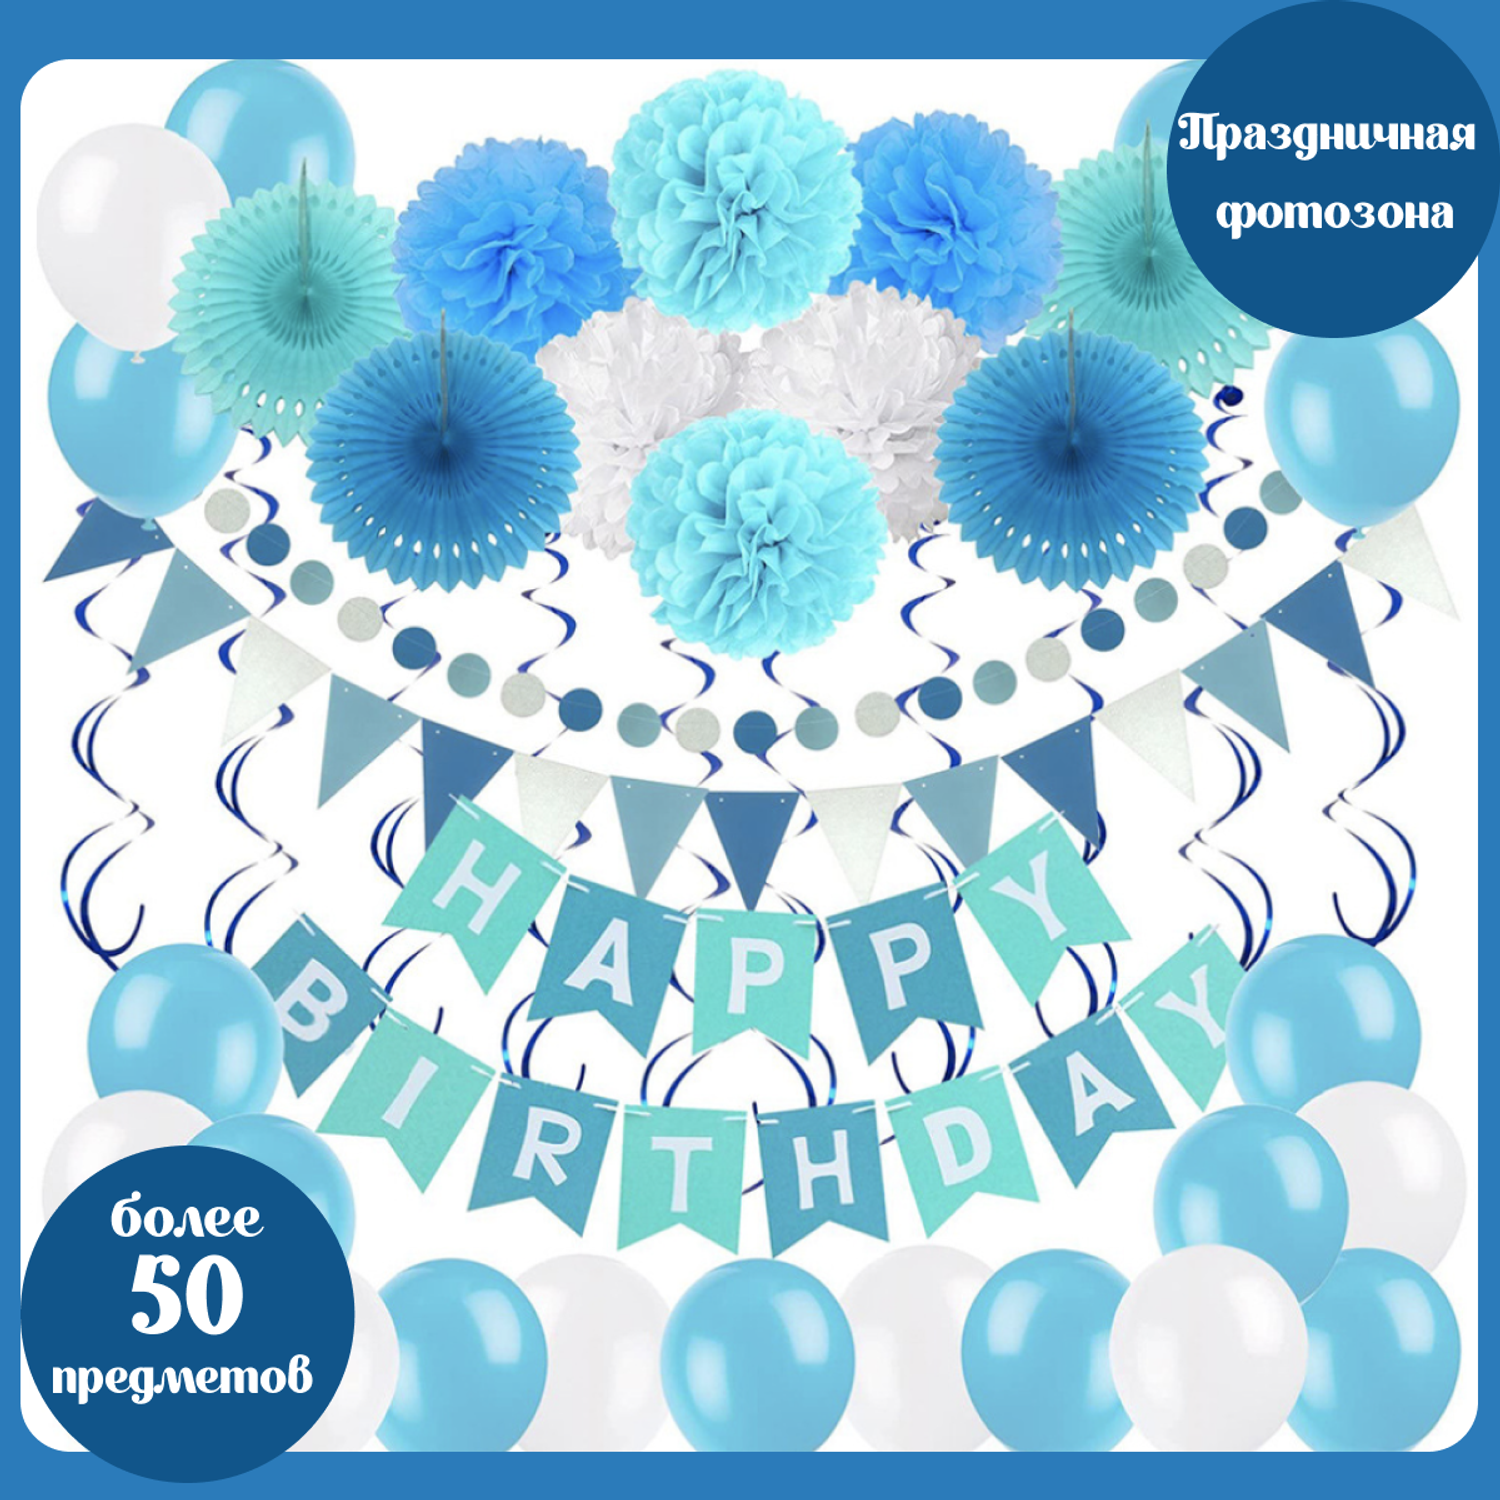 Воздушные шары набор Мишины шарики для фотозоны на день рождения с буквами Happy Birthday и бумажными помпонами - фото 1